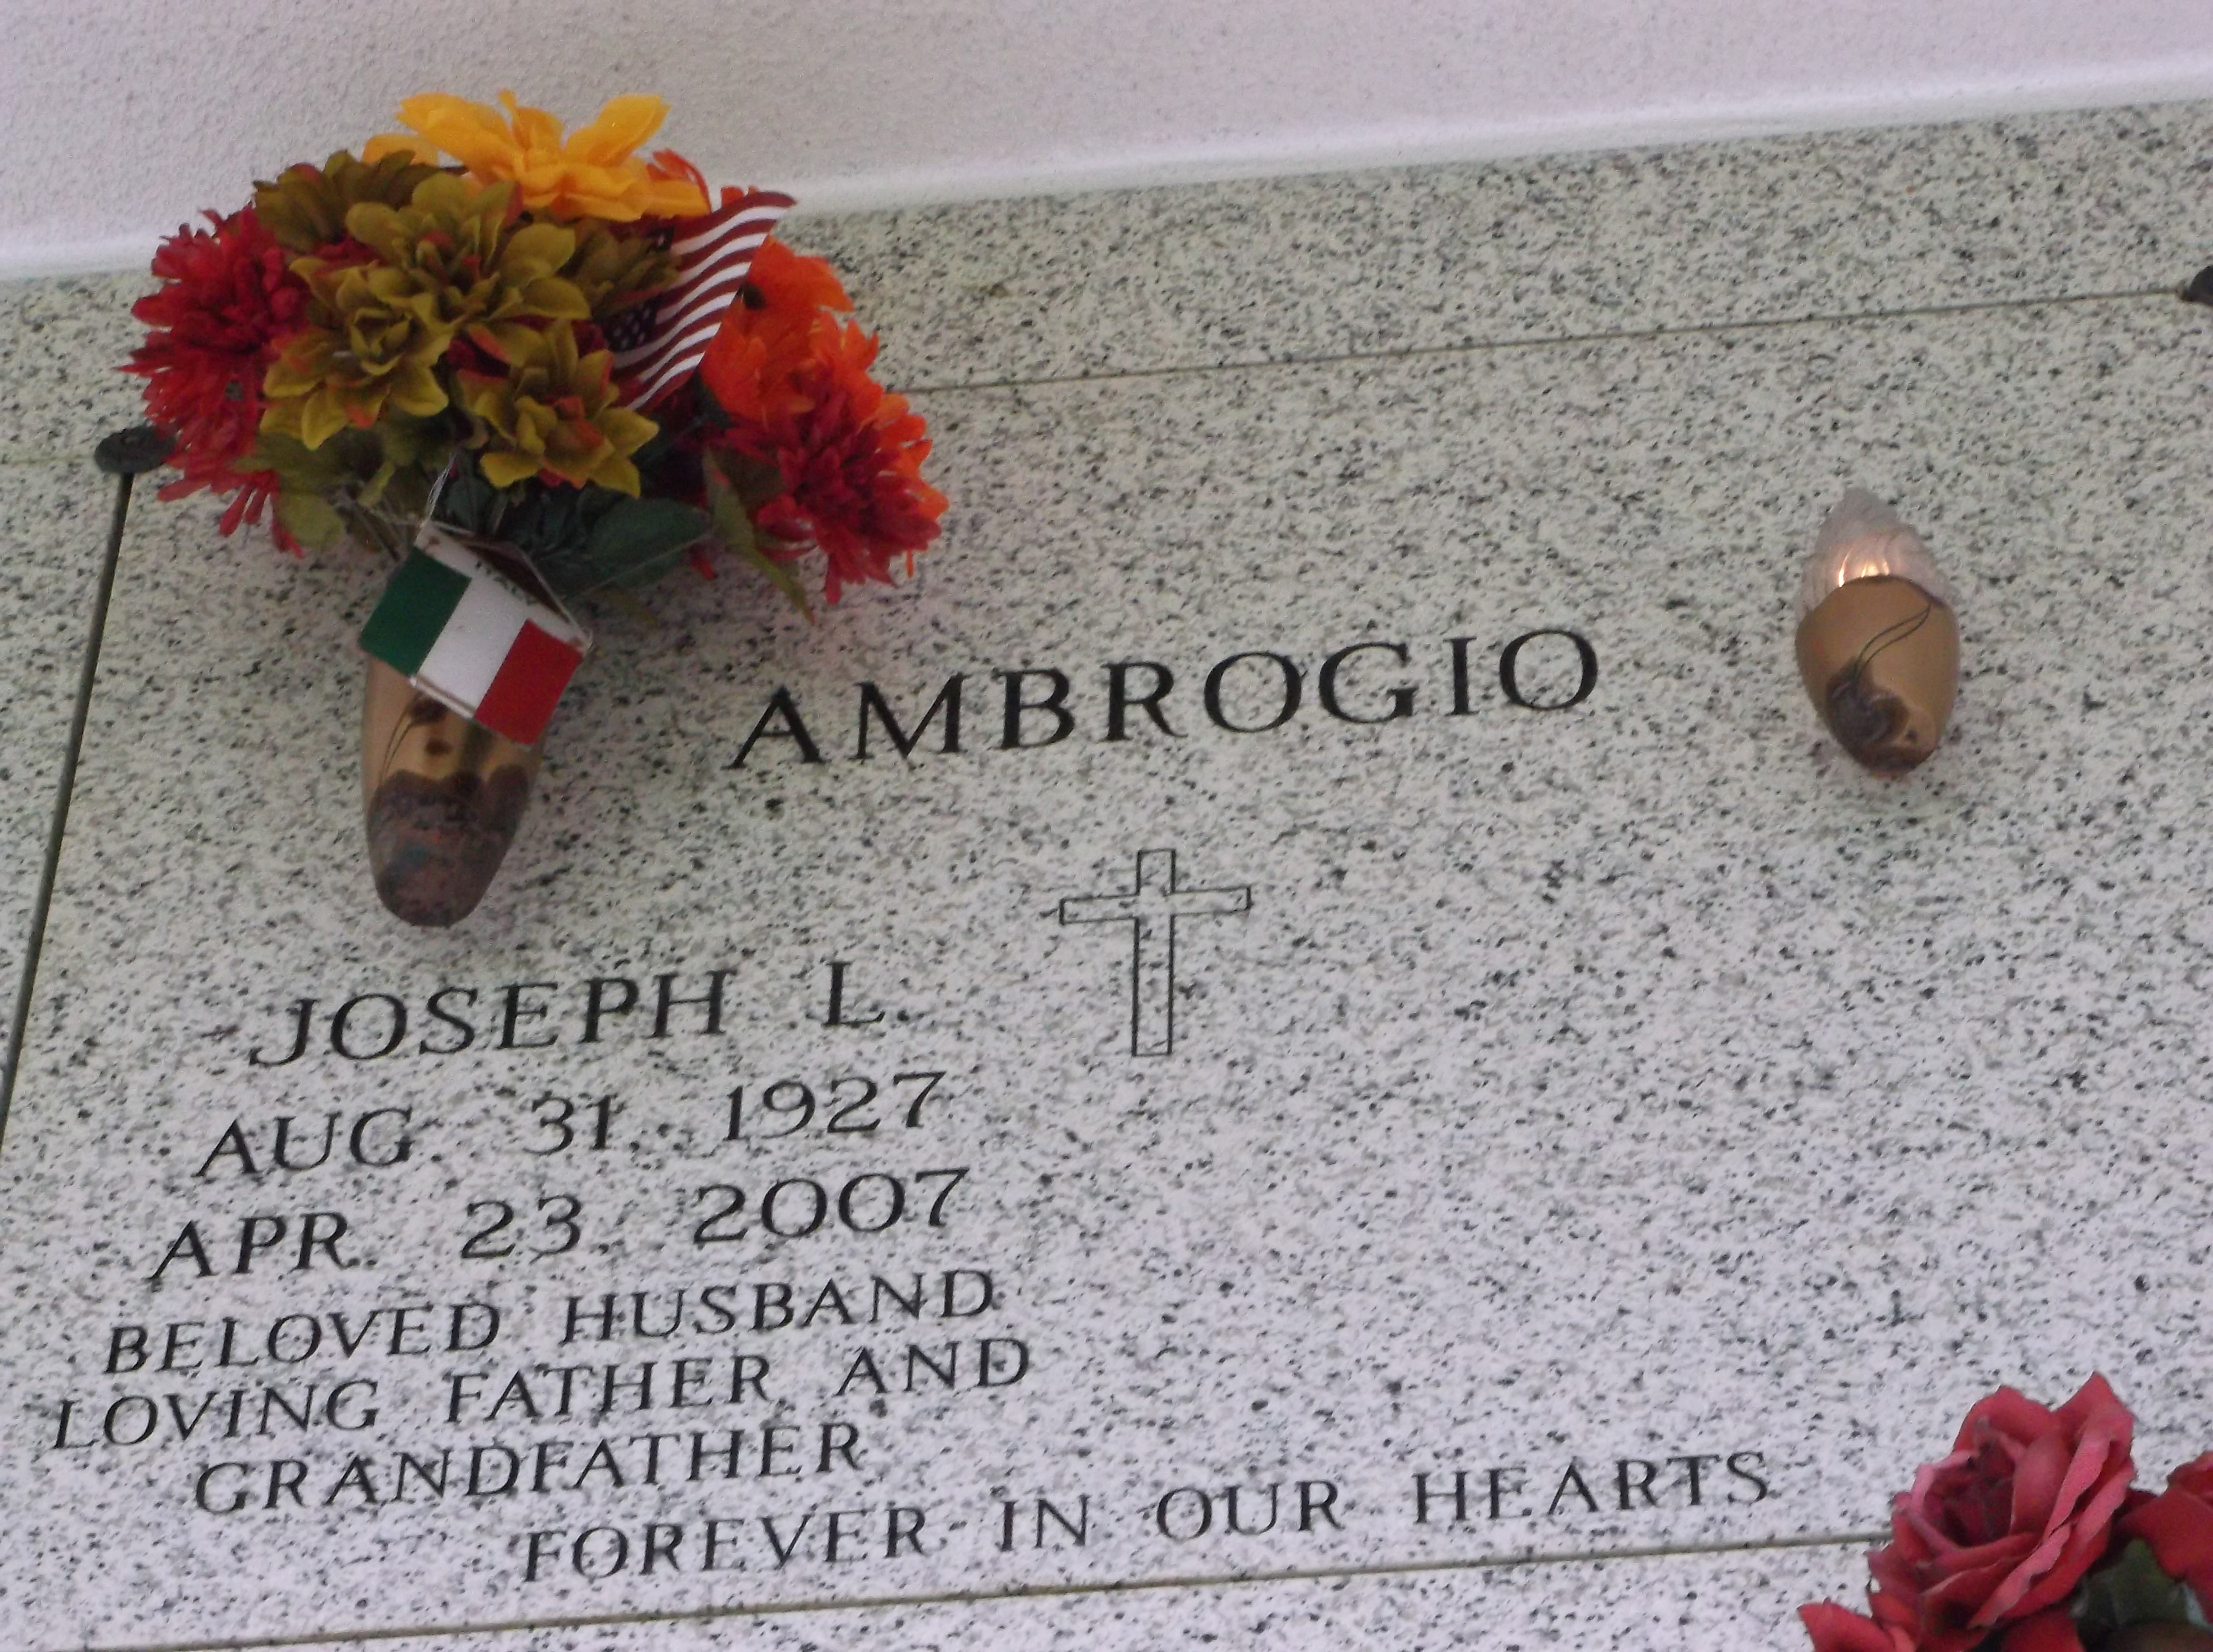 Joseph L Ambrogio